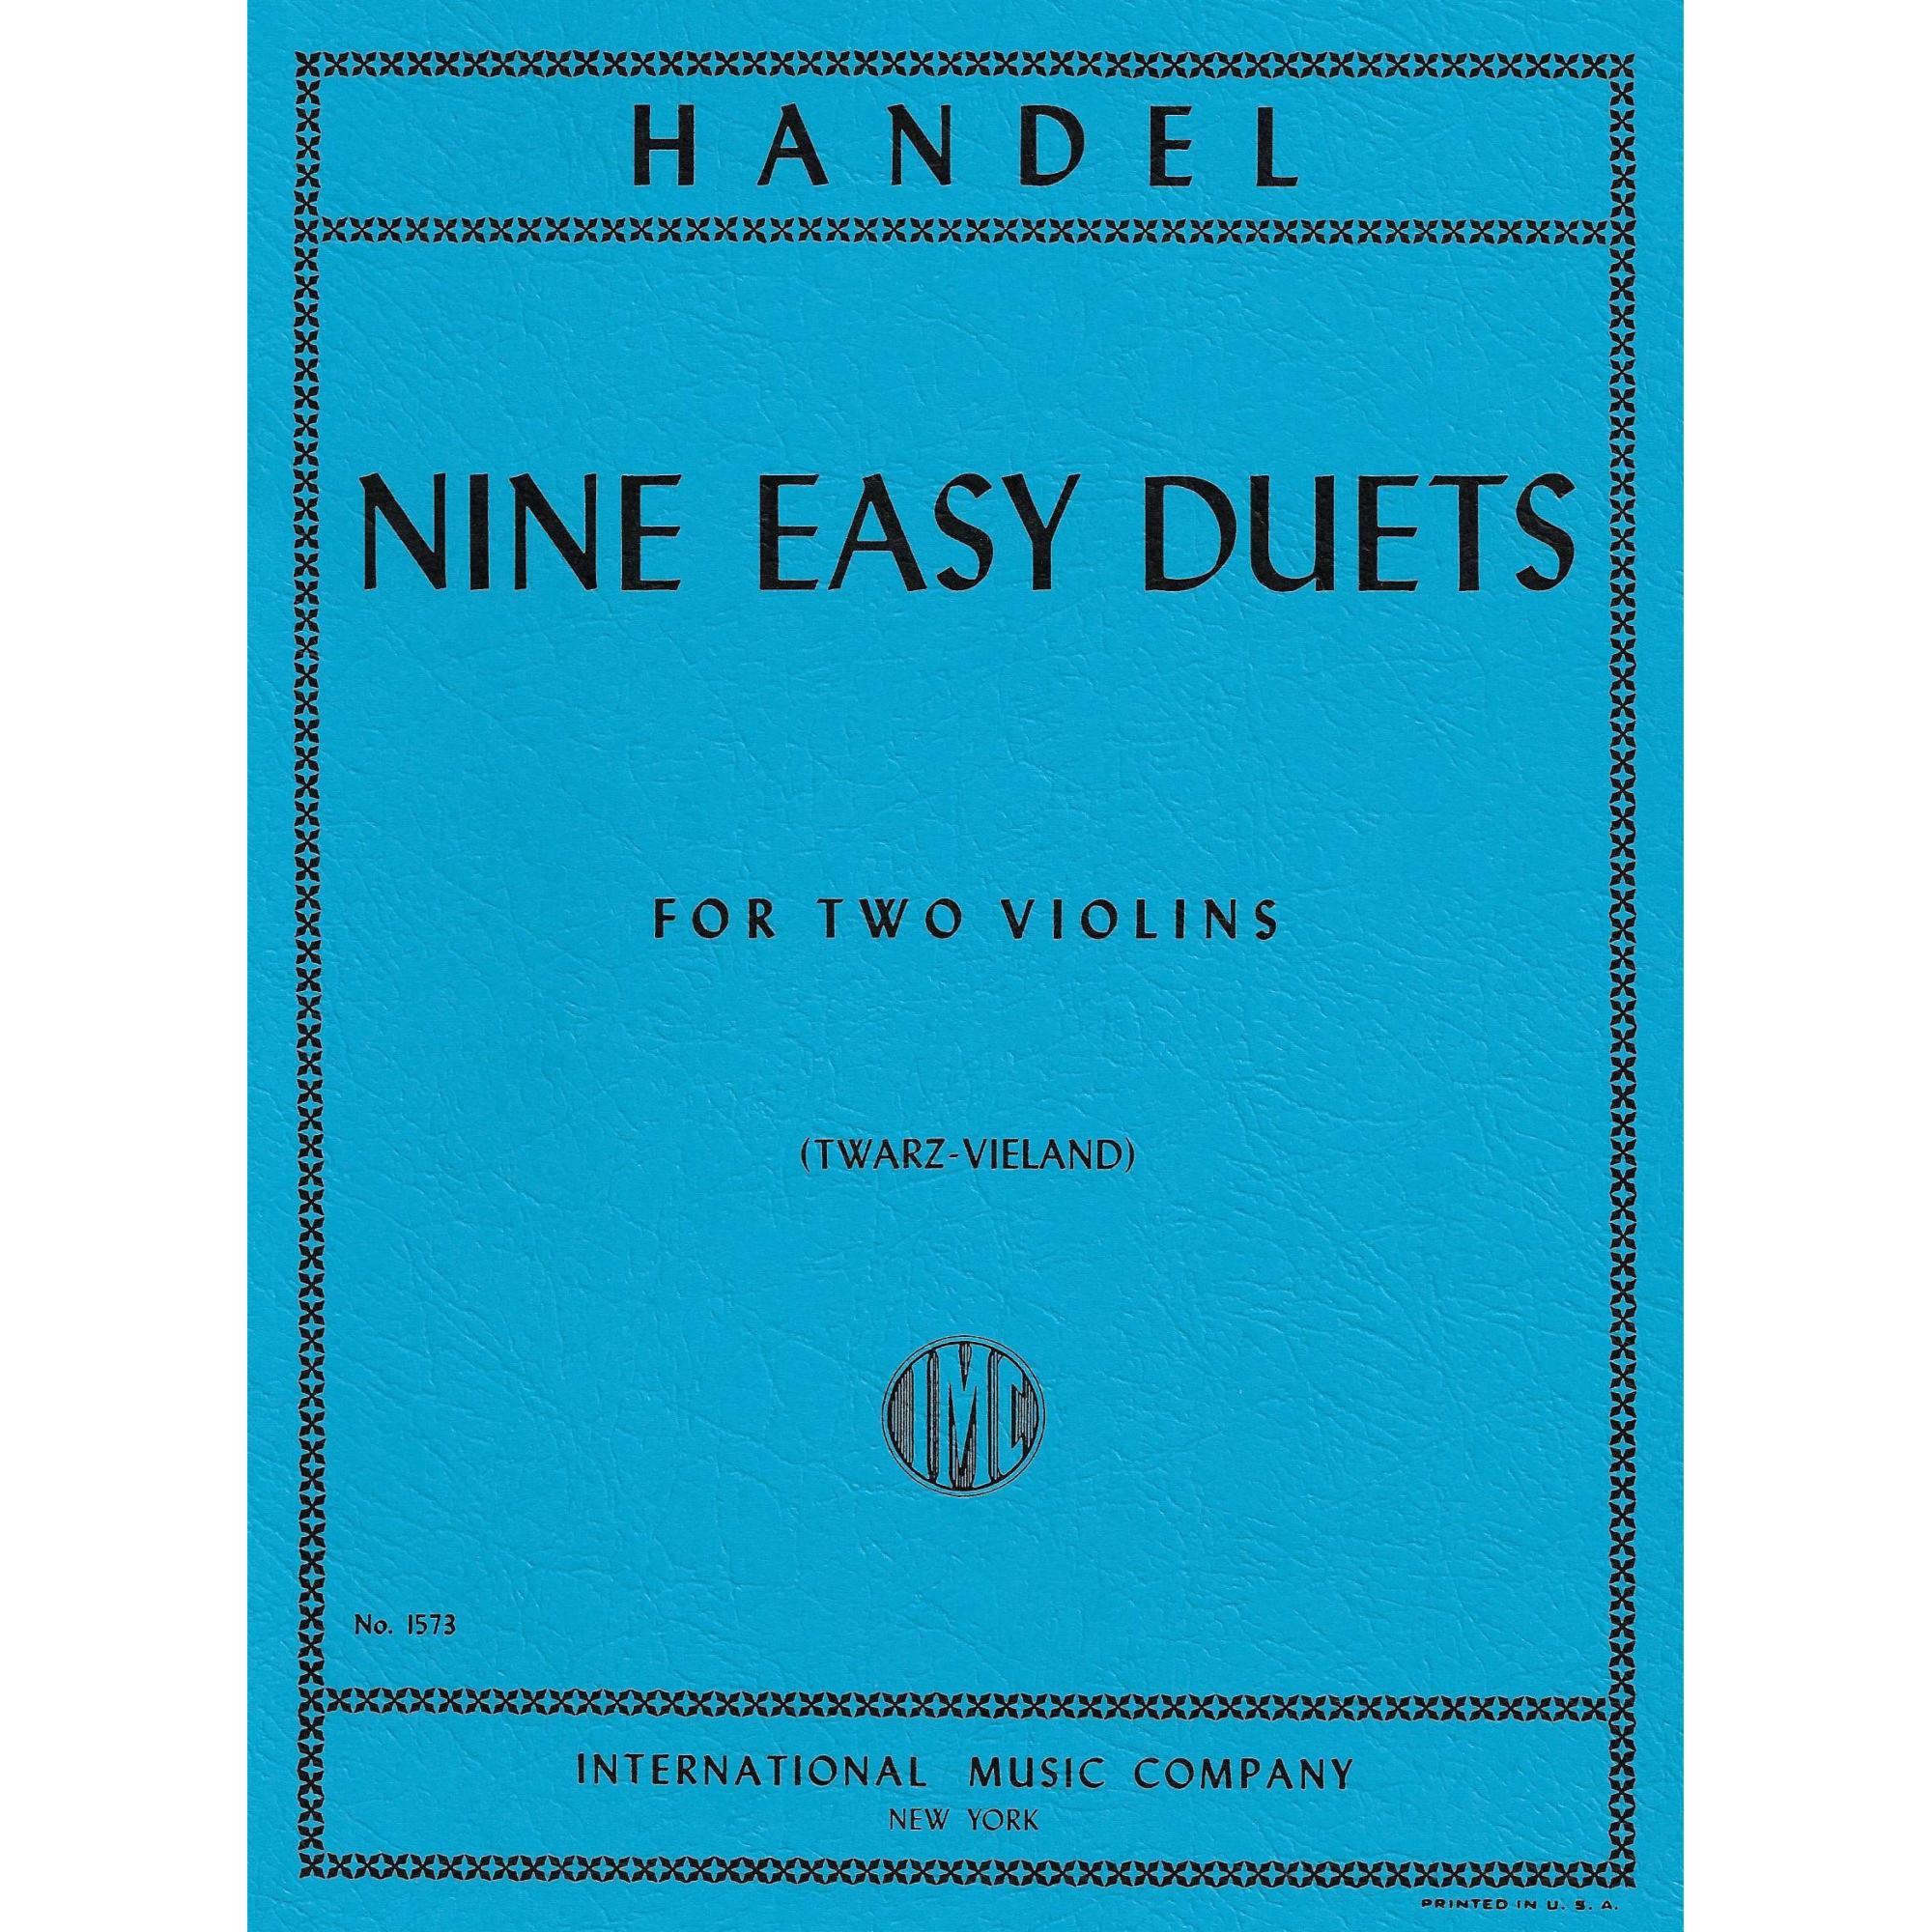 Handel -- Nine Easy Duets for Two Violins